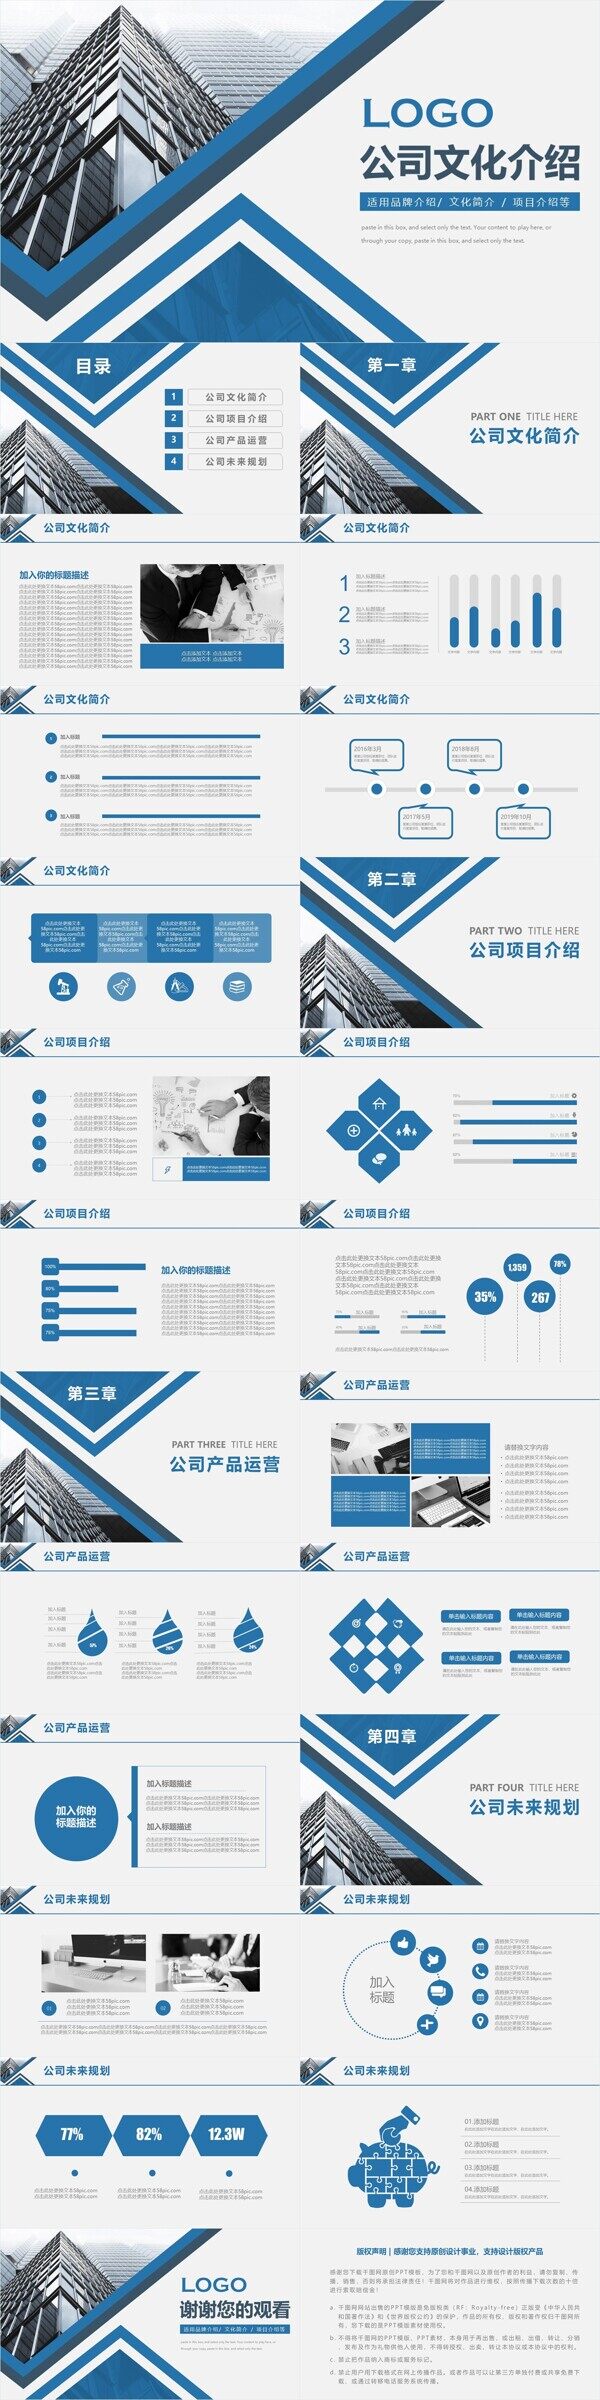 蓝色大气商务风公司文化宣传介绍PPT模板